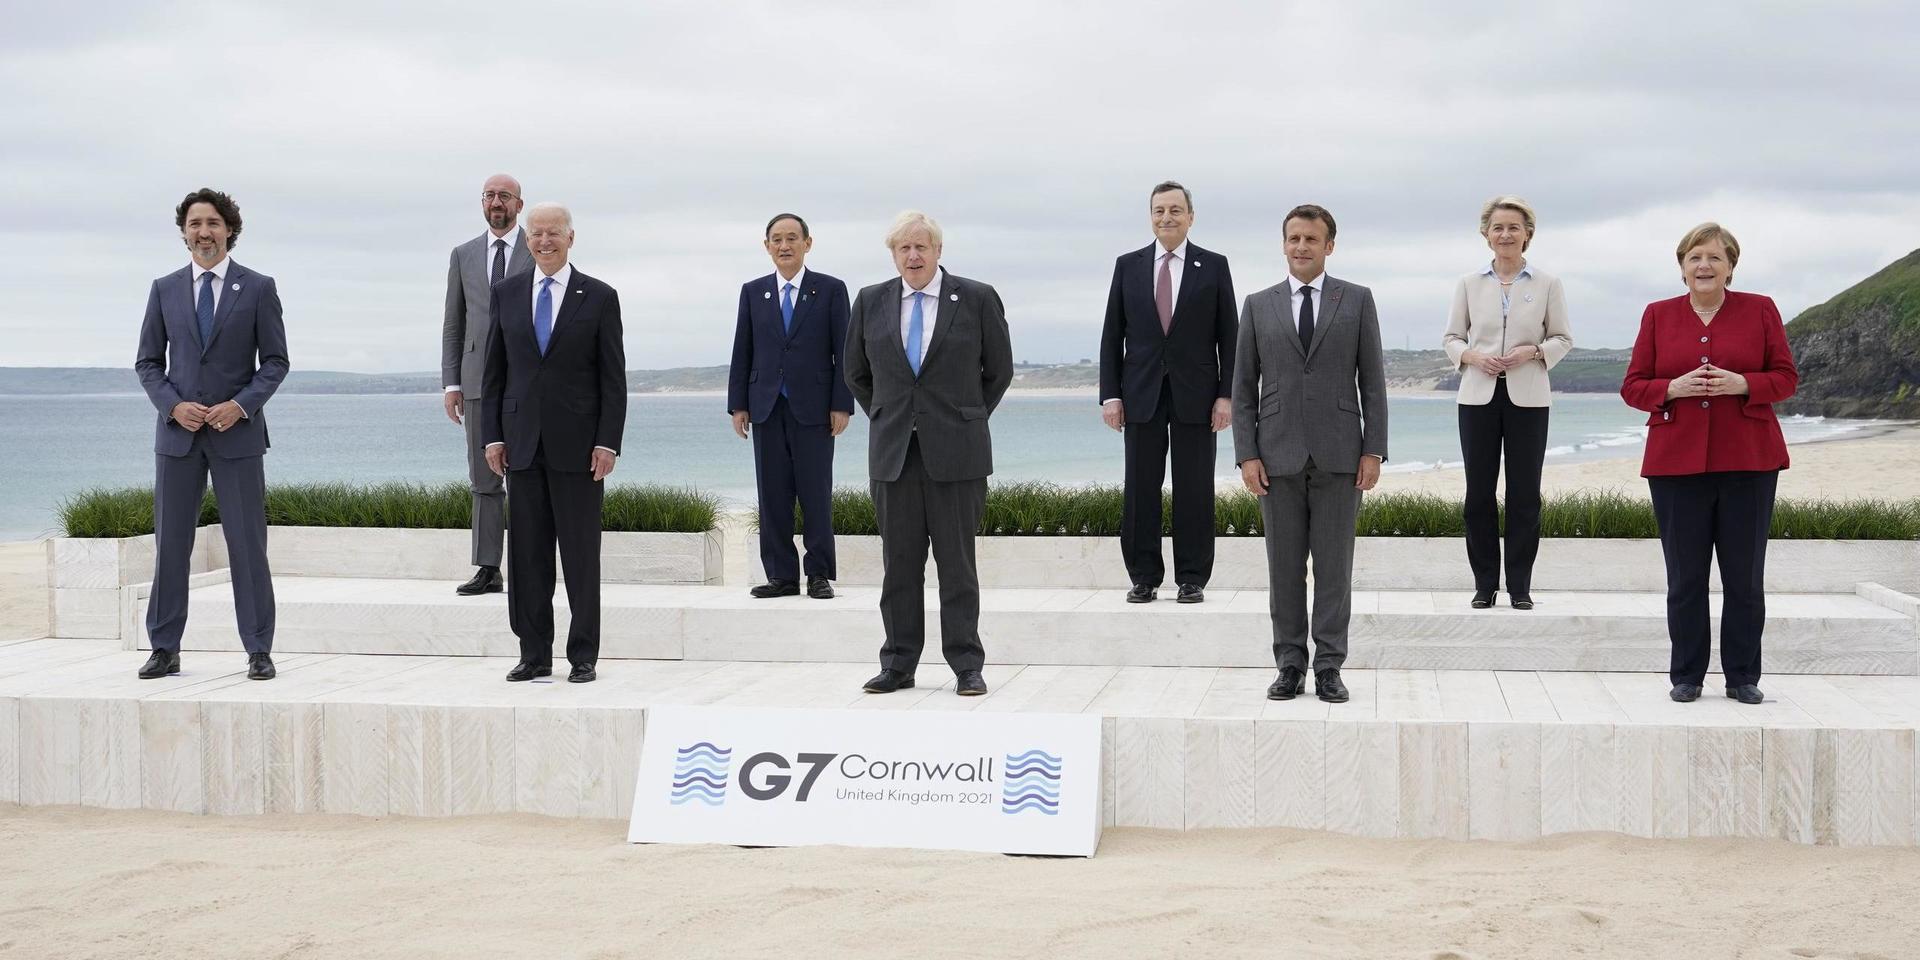 G7-ledarnas traditionella familjefoto, taget på stranden i brittiska Cornwall i fredags.